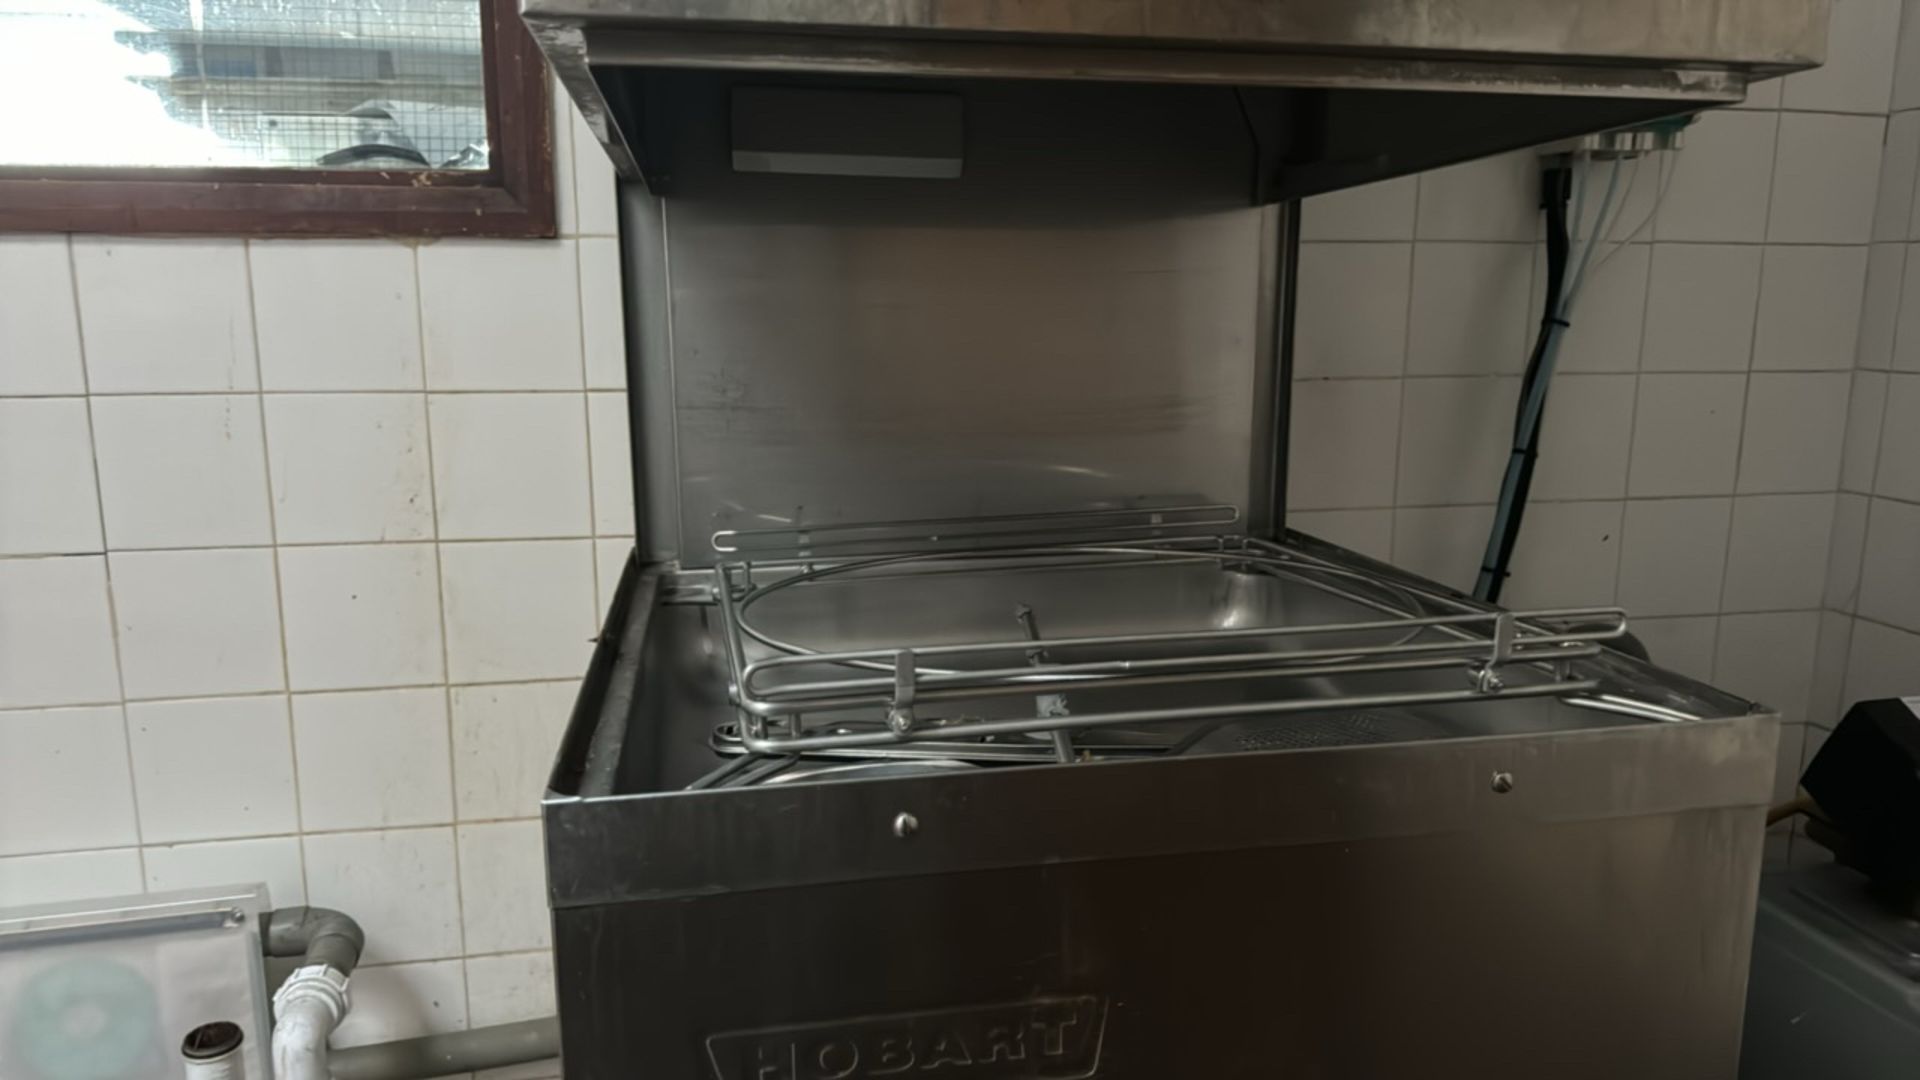 Hobart Dishwasher - Image 2 of 8